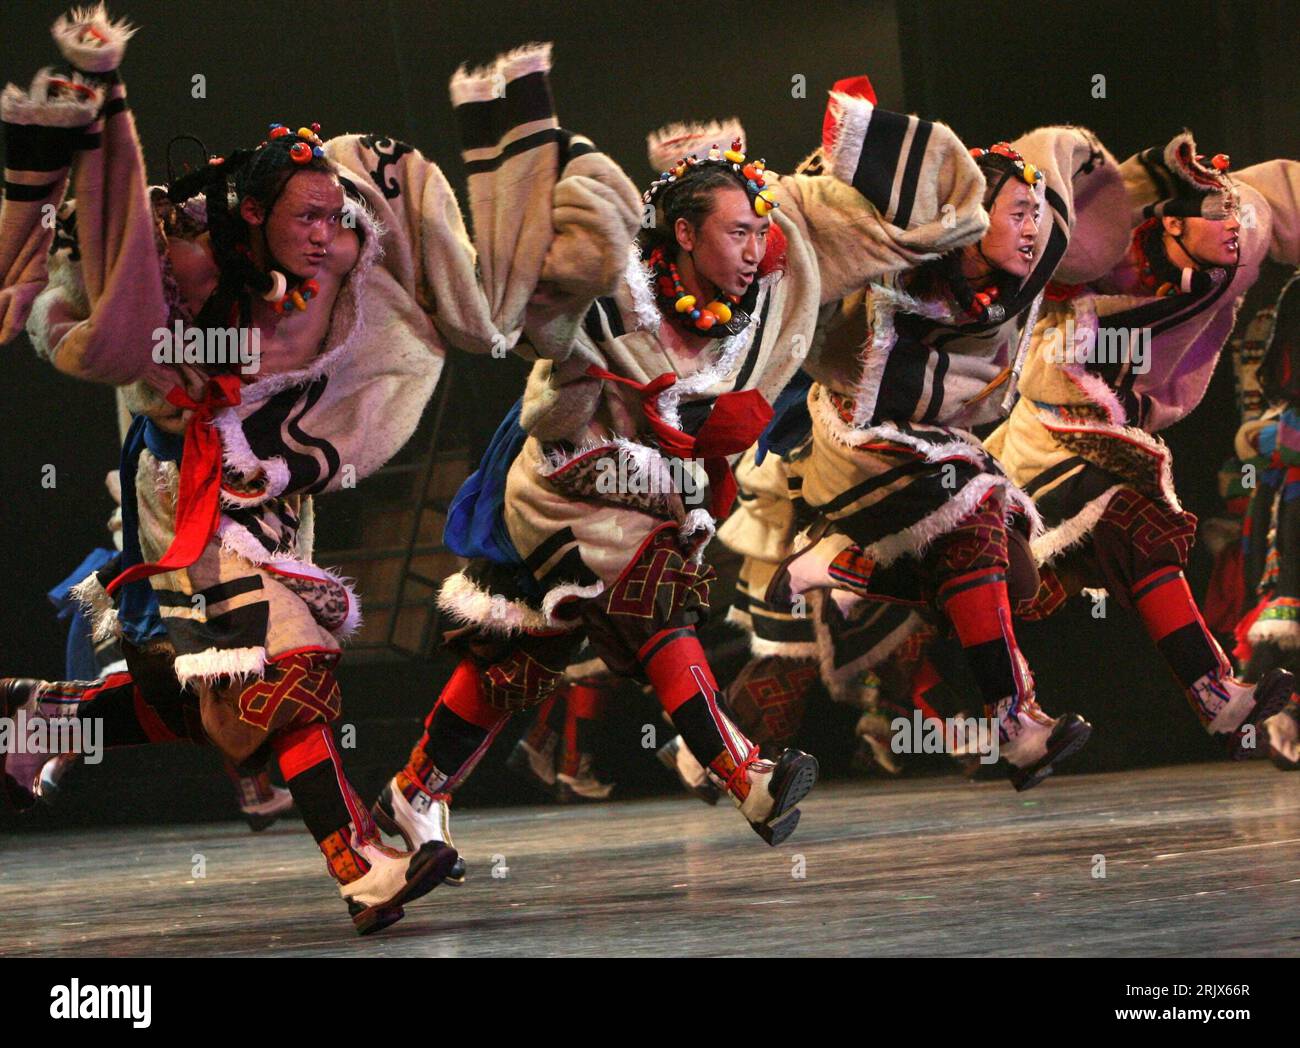 Bildnummer: 52159936 Datum: 07.10.2007 Copyright: imago/Xinhua Tibetanische Tänzer während der Aufführung der tibetanischen Volkstanz-Show - das tibetanische Rätsel - in Suzhou, China PUBLICATIONxNOTxINxCHN, Personen; 2007, Suzhou, Schauspieler, Tibetaner, tanzen, Tanzt, Show, Volkstanz, tibetisches Rätsel; , quer, Kbdig, Gruppenbild, Tanz, Kunst, China, Aktion, Stockfoto